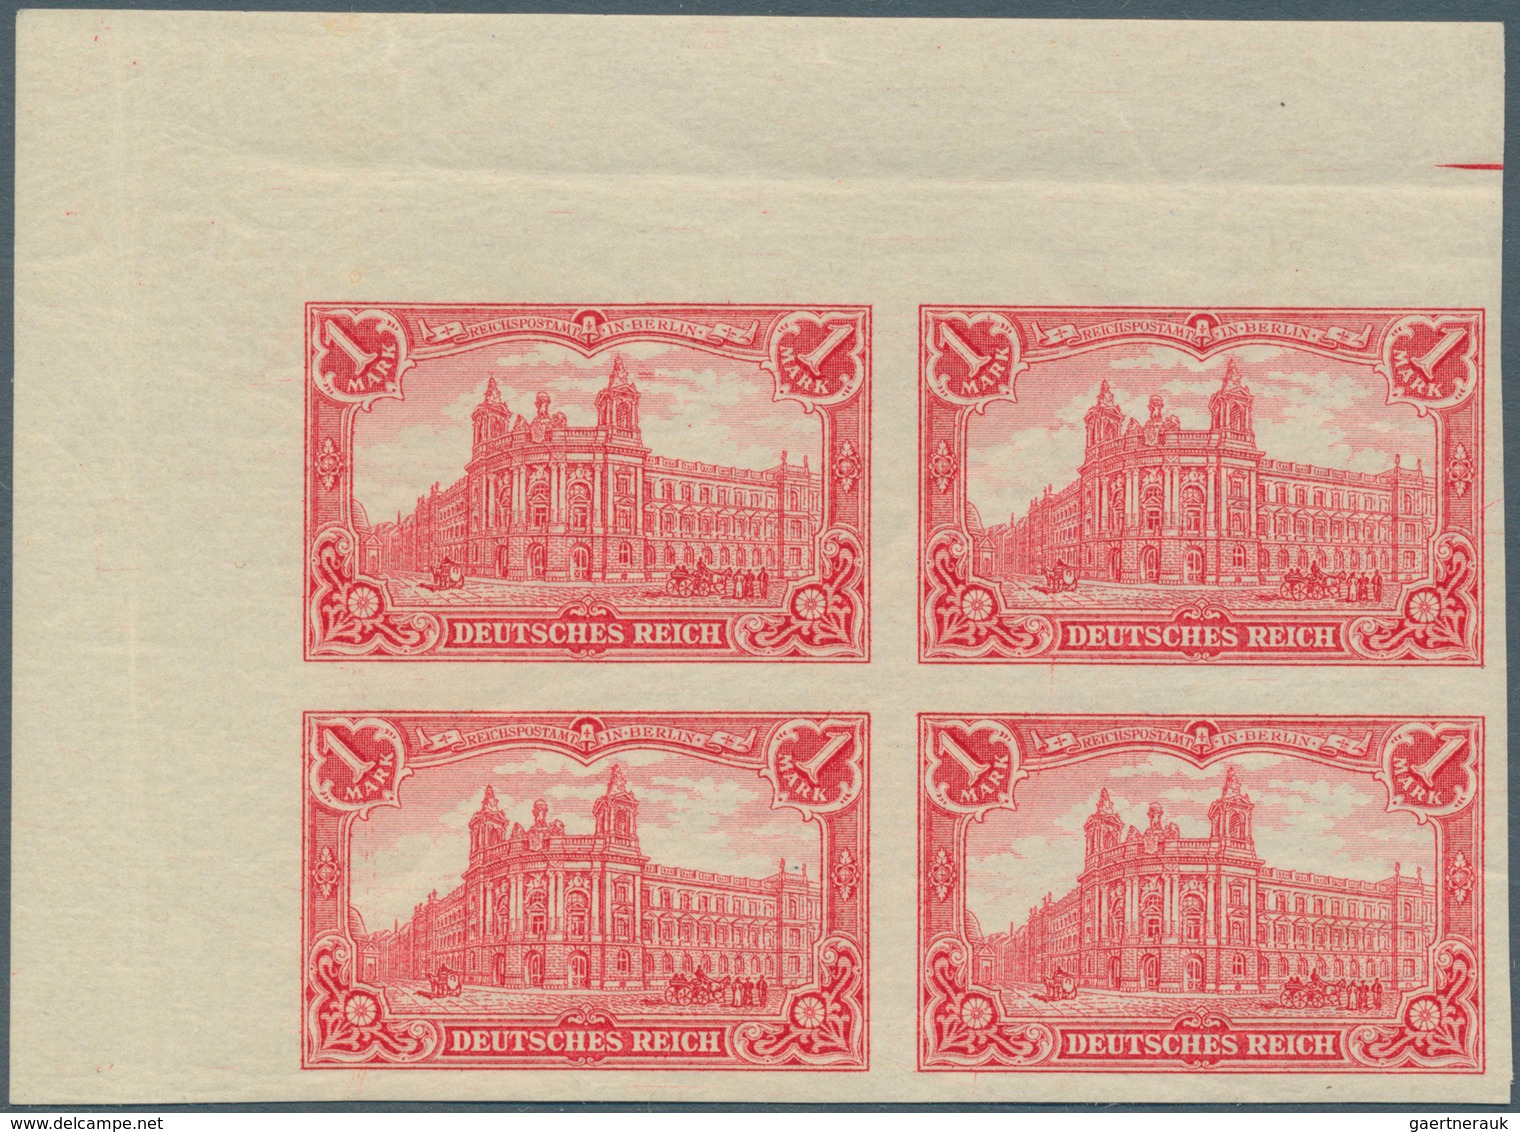 Deutsches Reich - Germania: 1902, Germania 1-5 Mark, dabei die 2 Mark mit lateinischer Inschrift, al